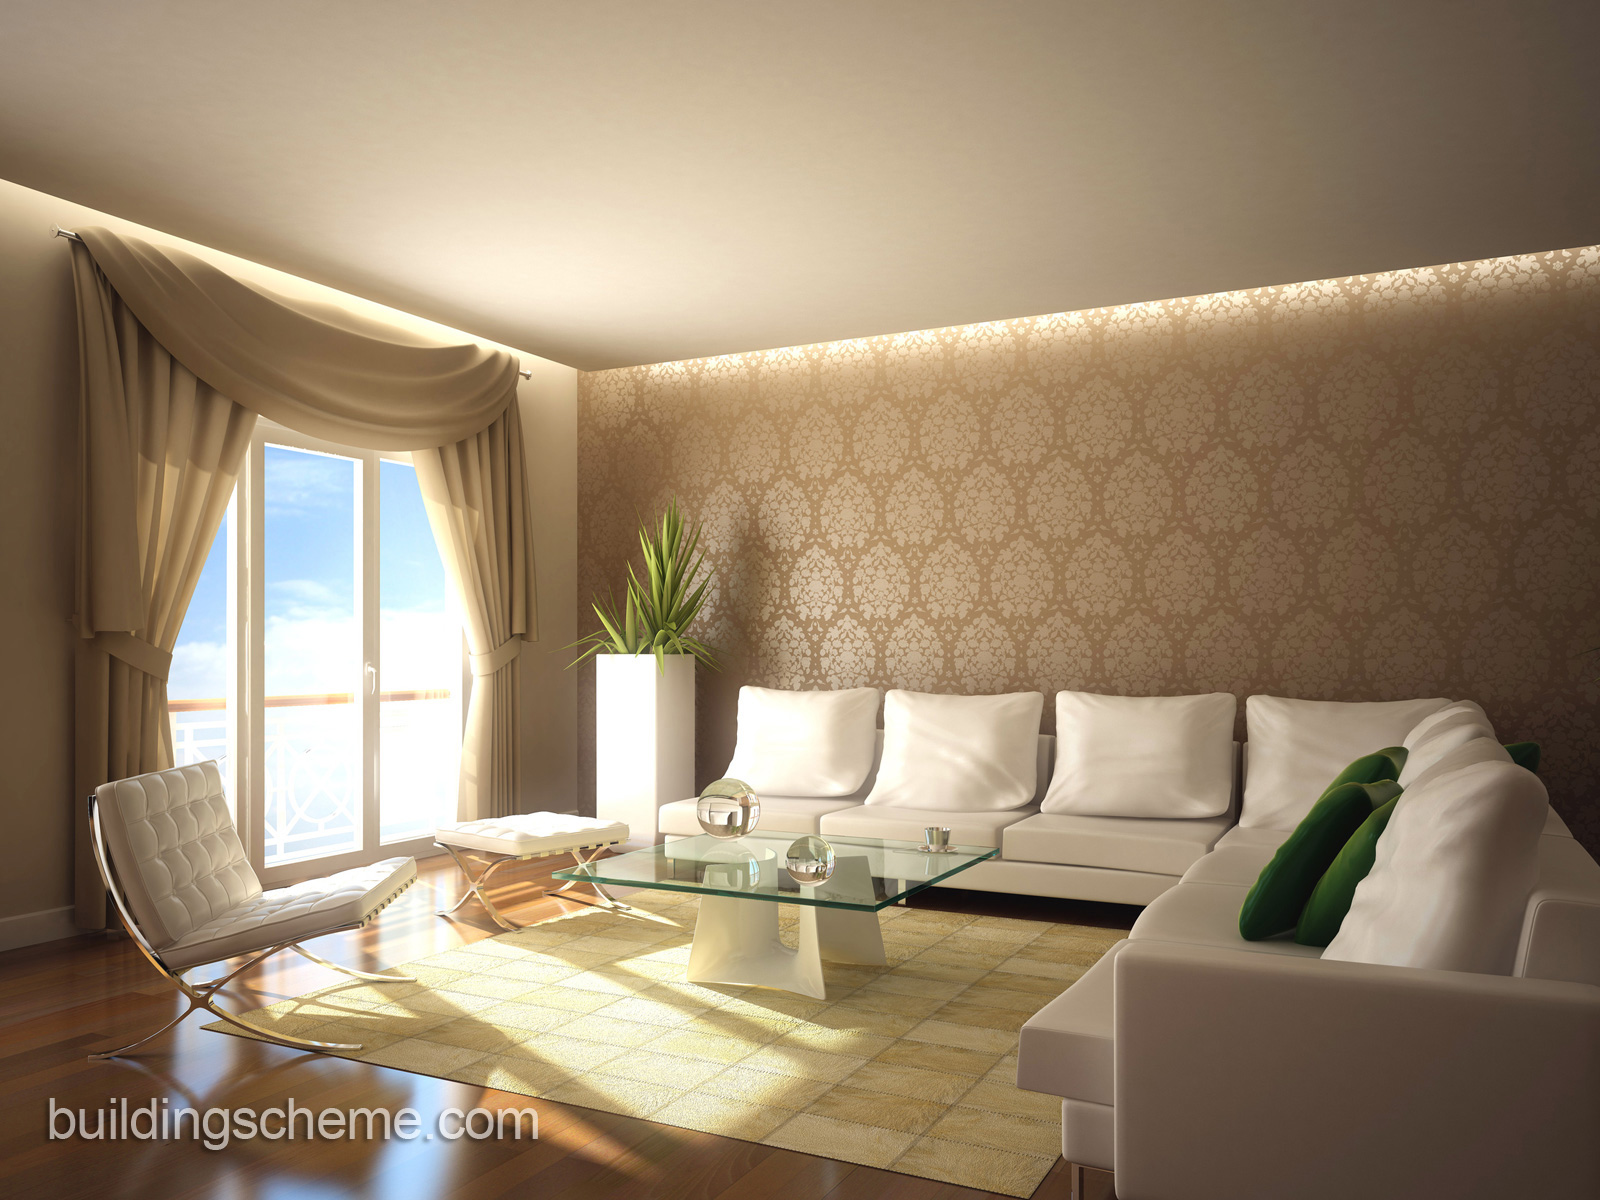 wallpaper designs for living room,room,interior design,living room,furniture,property